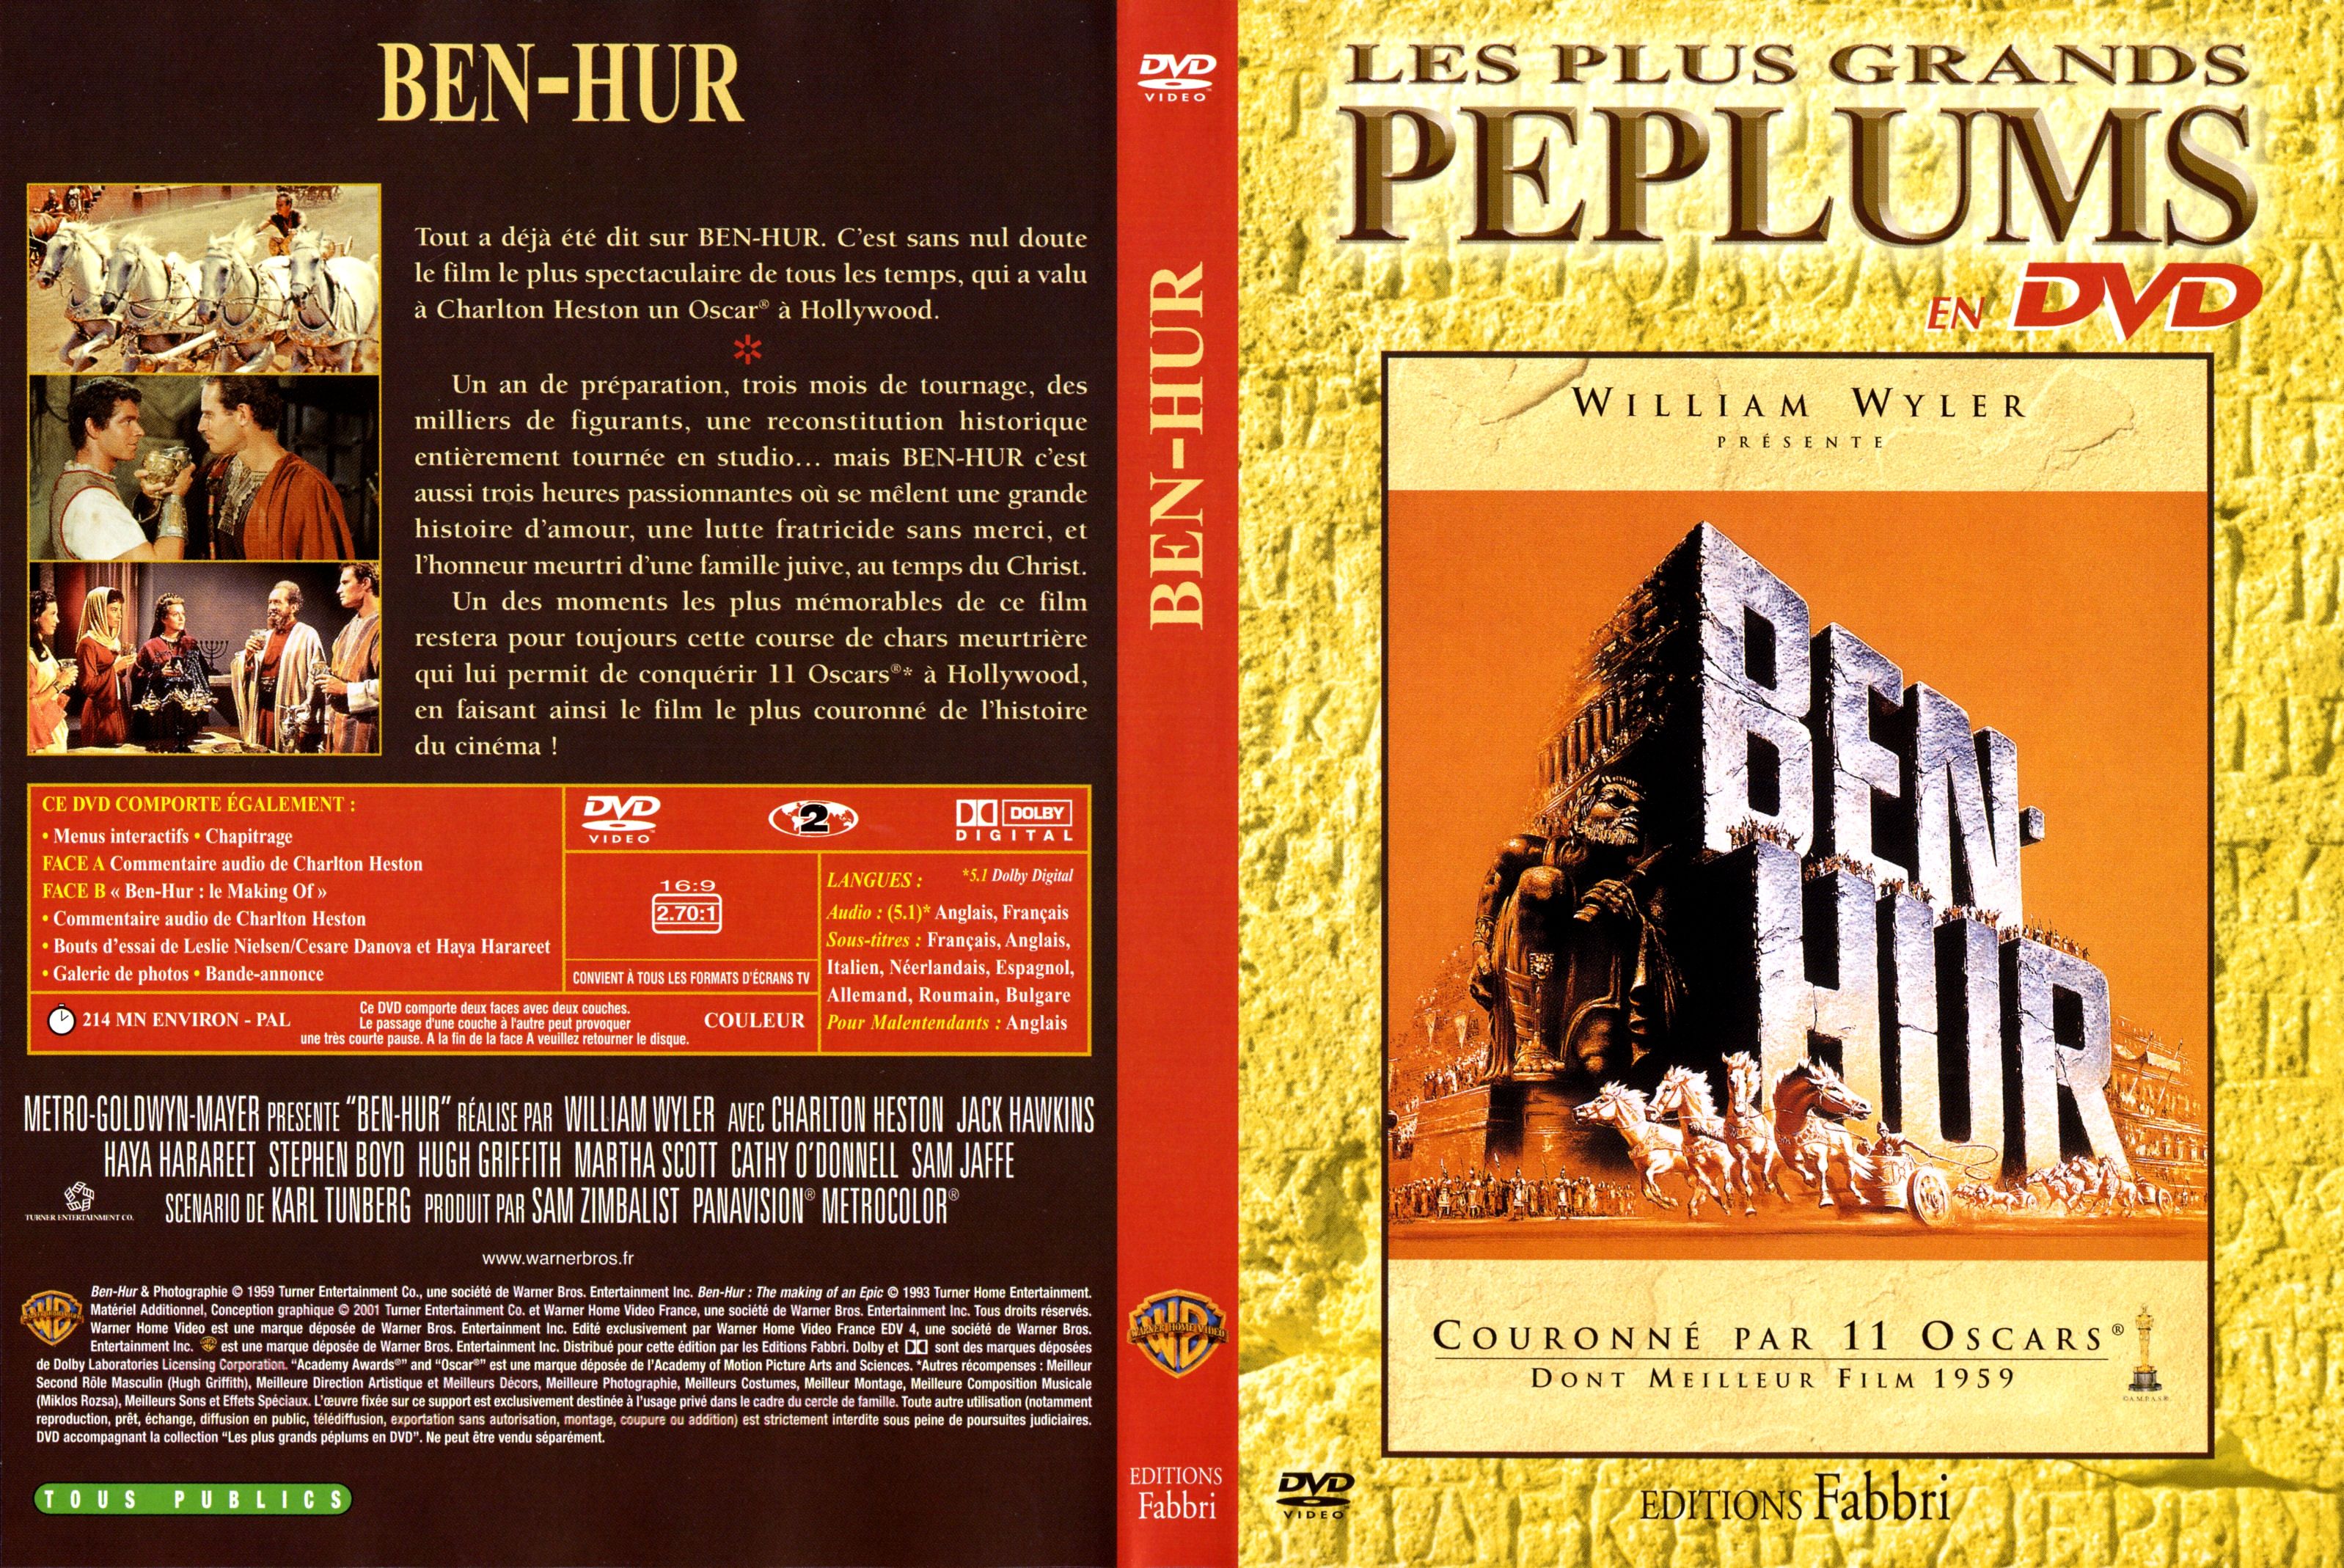 Jaquette DVD Ben-Hur v2